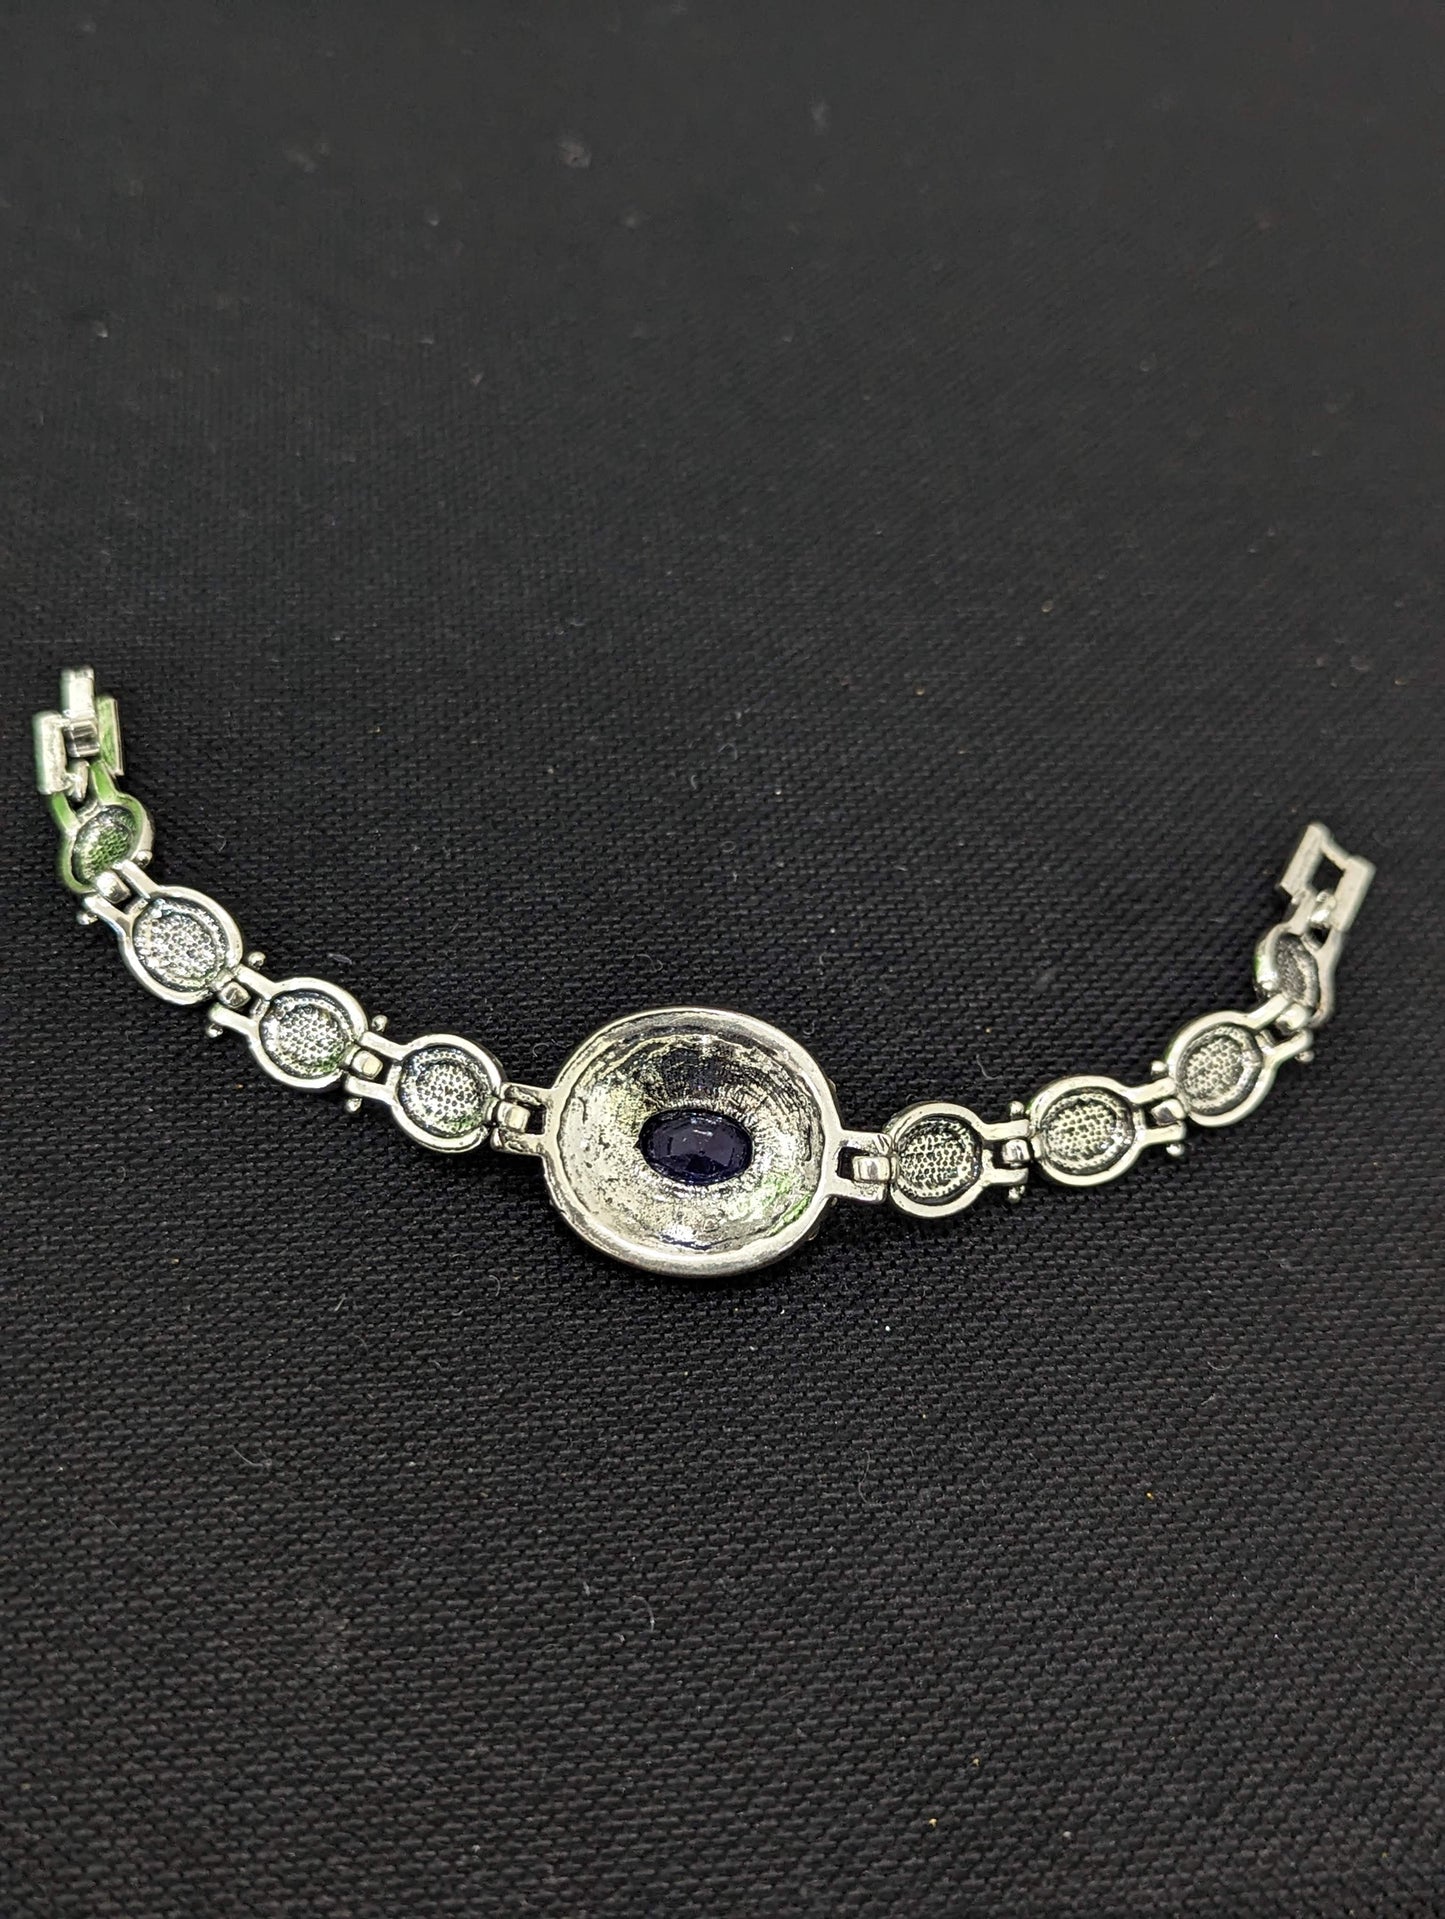 Antique Silver Blue stone Bracelet